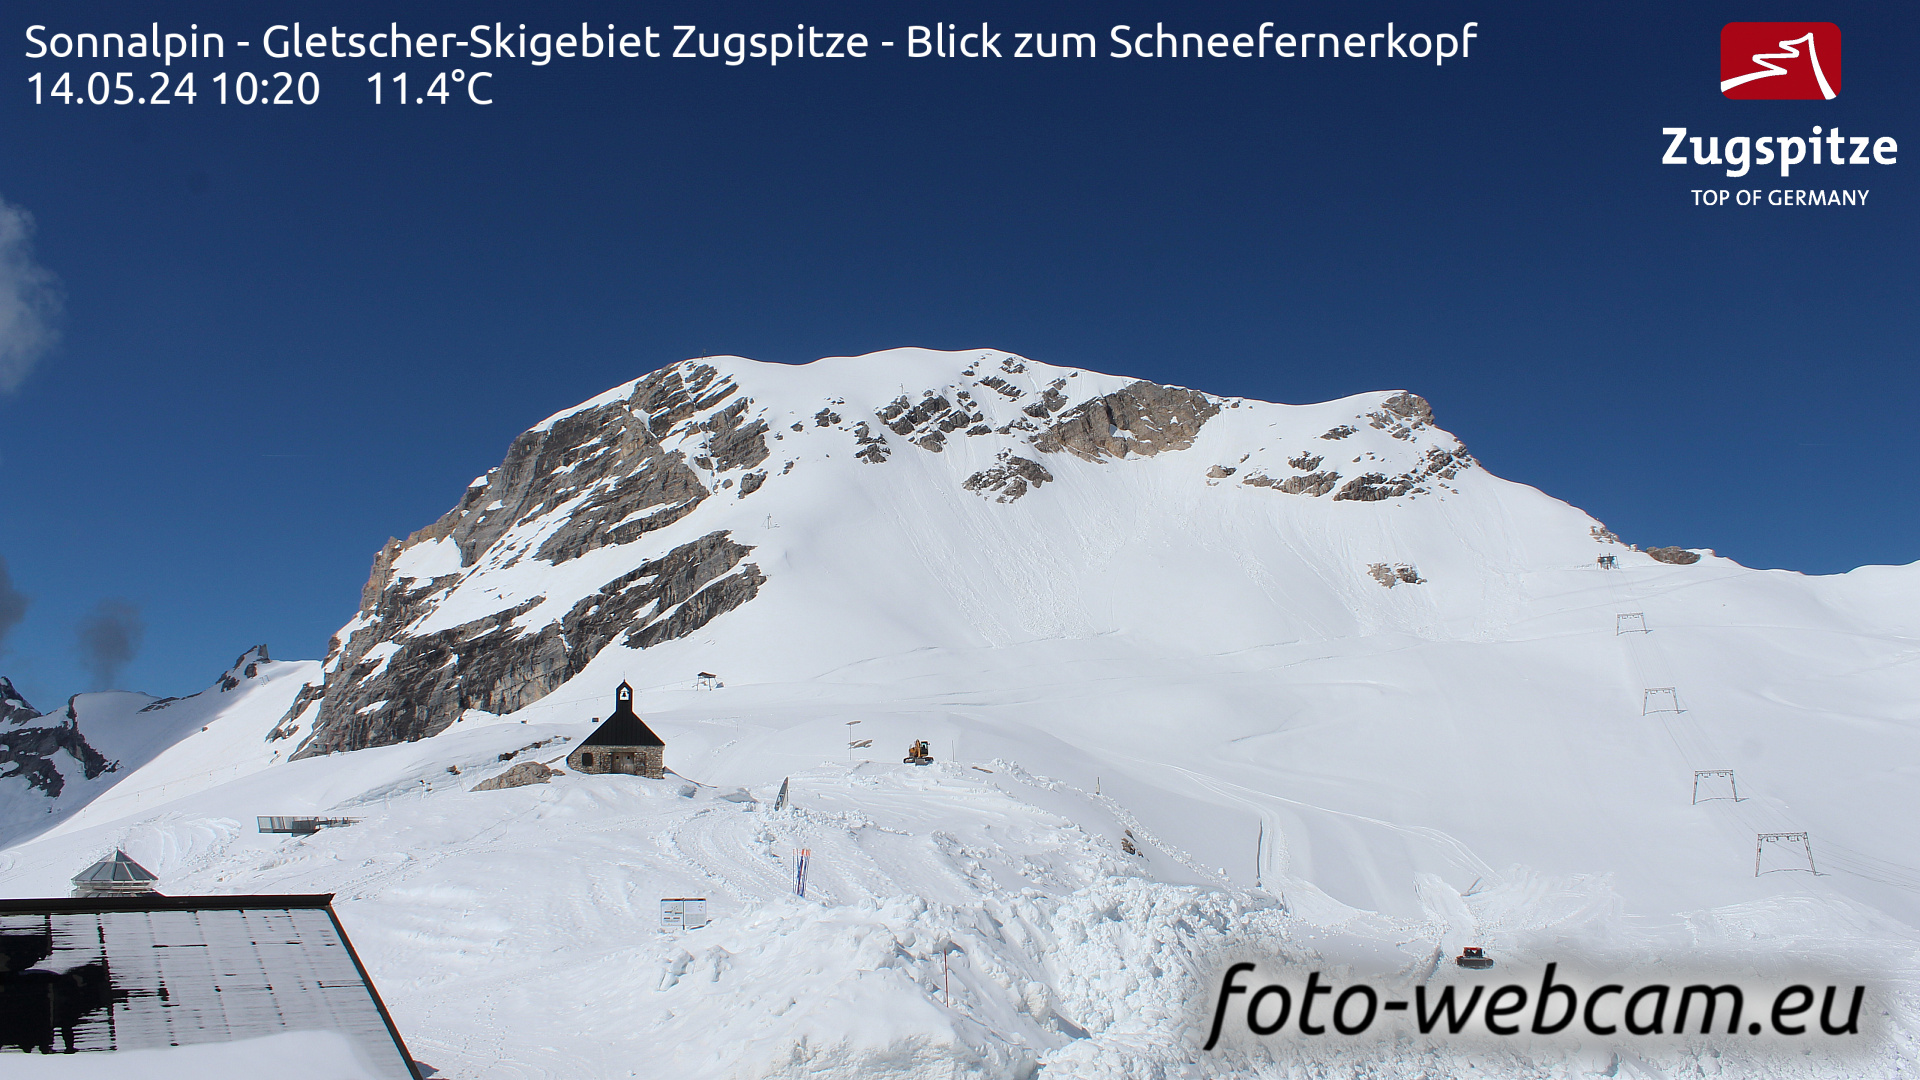 Zugspitze So. 10:24